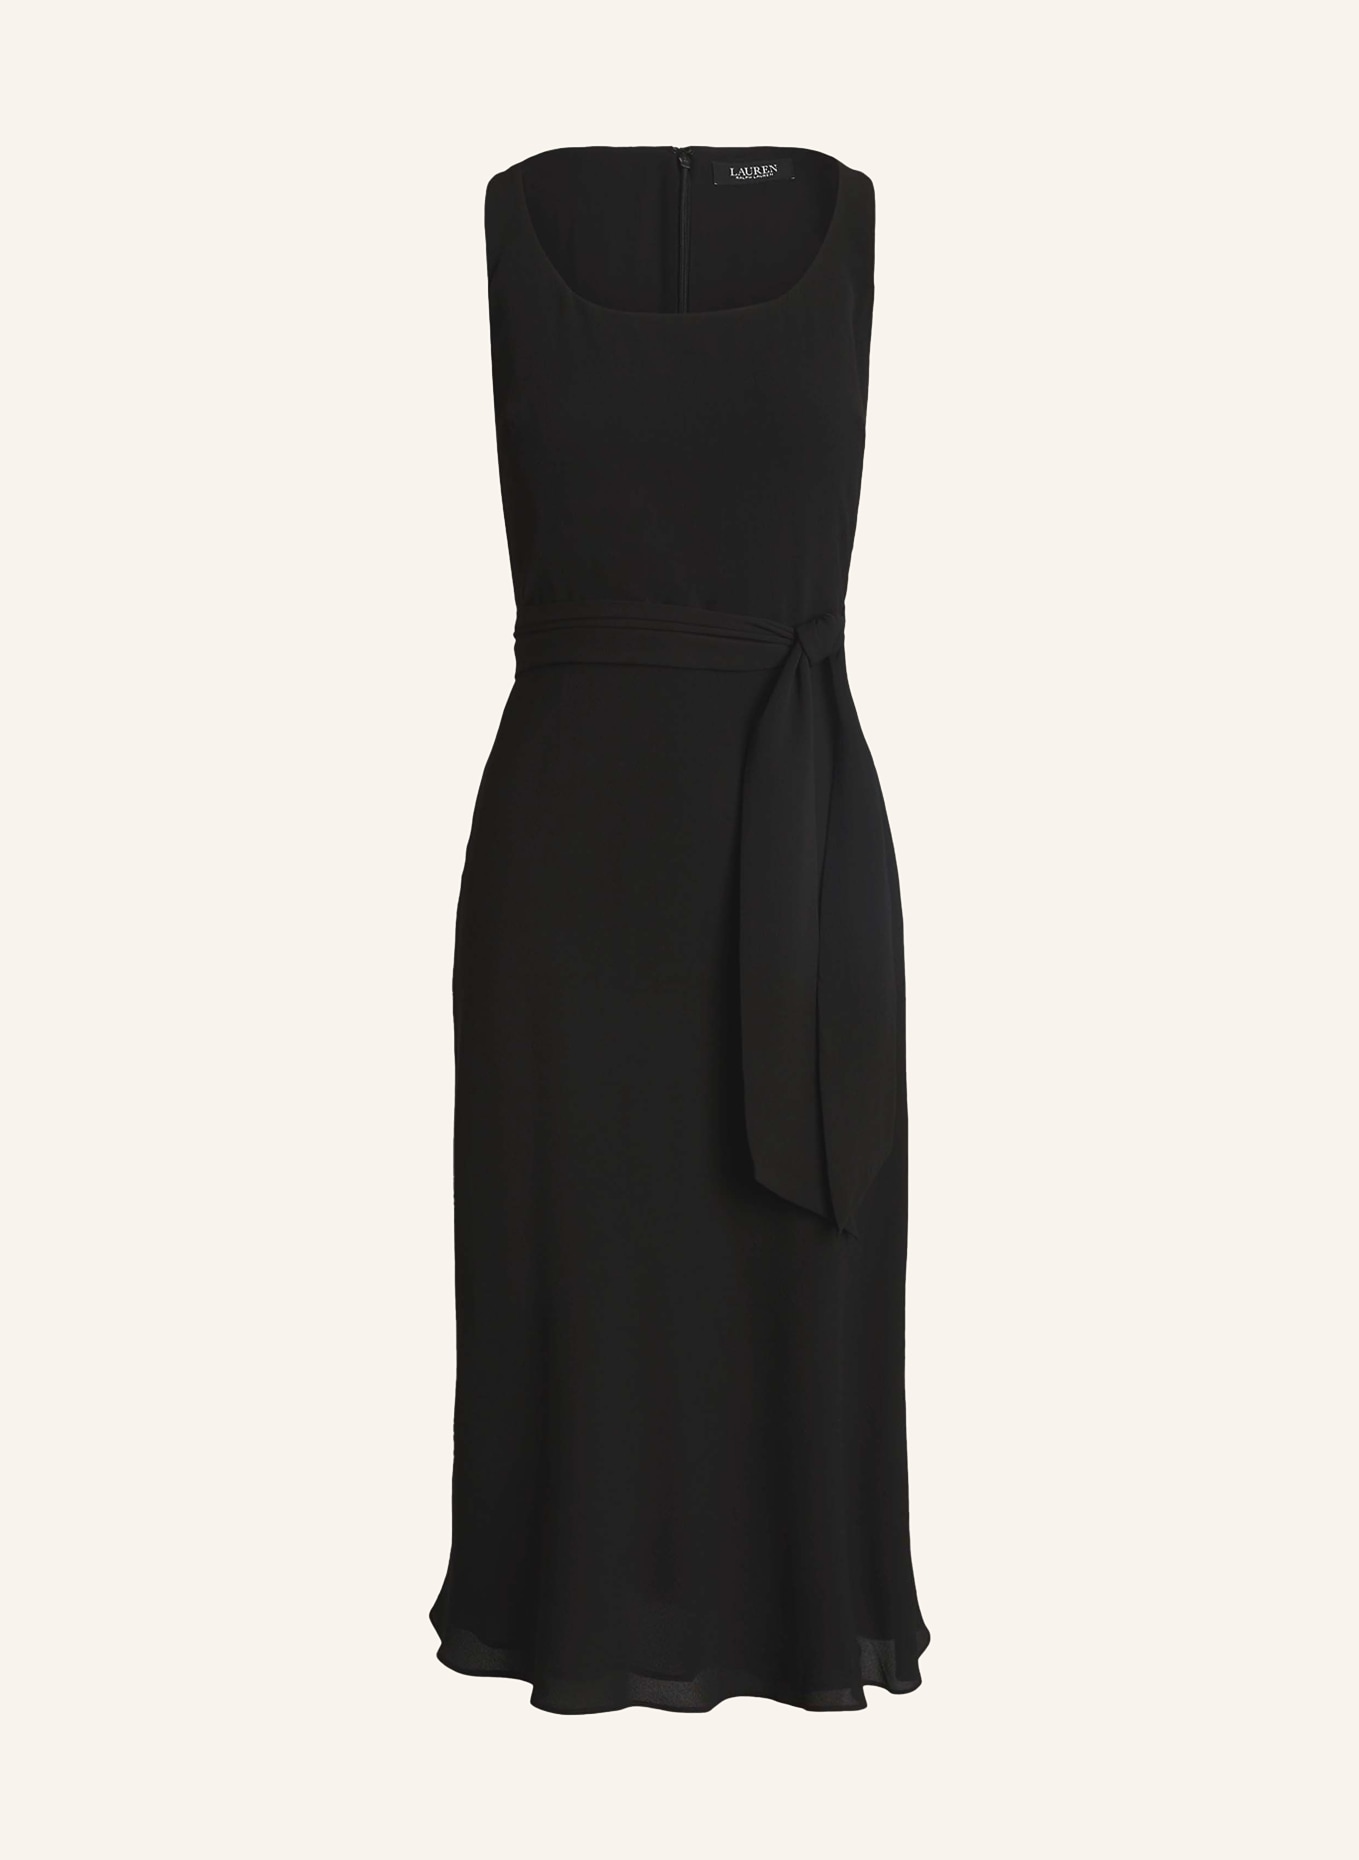 LAUREN RALPH LAUREN Dress, Color: BLACK (Image 1)